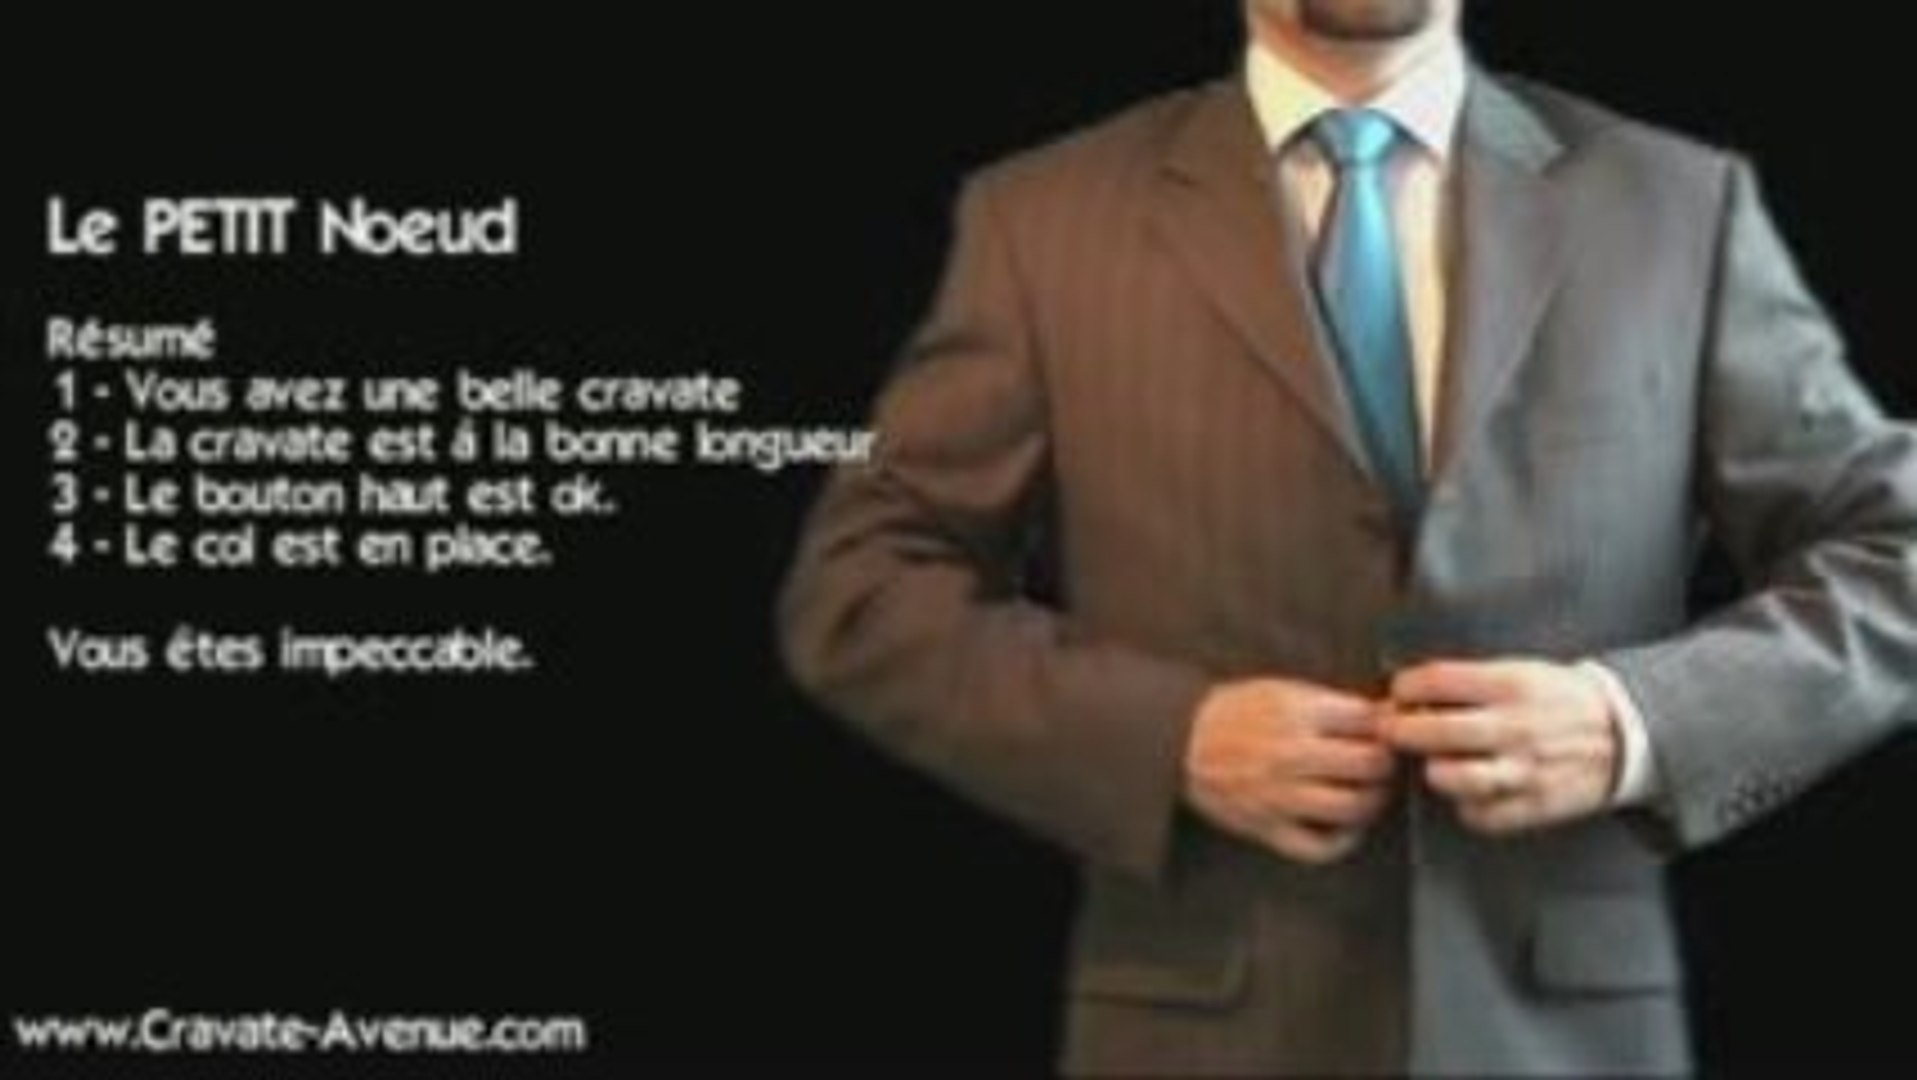 Le petit noeud de cravate - Faire un noeud de cravate - Vidéo Dailymotion